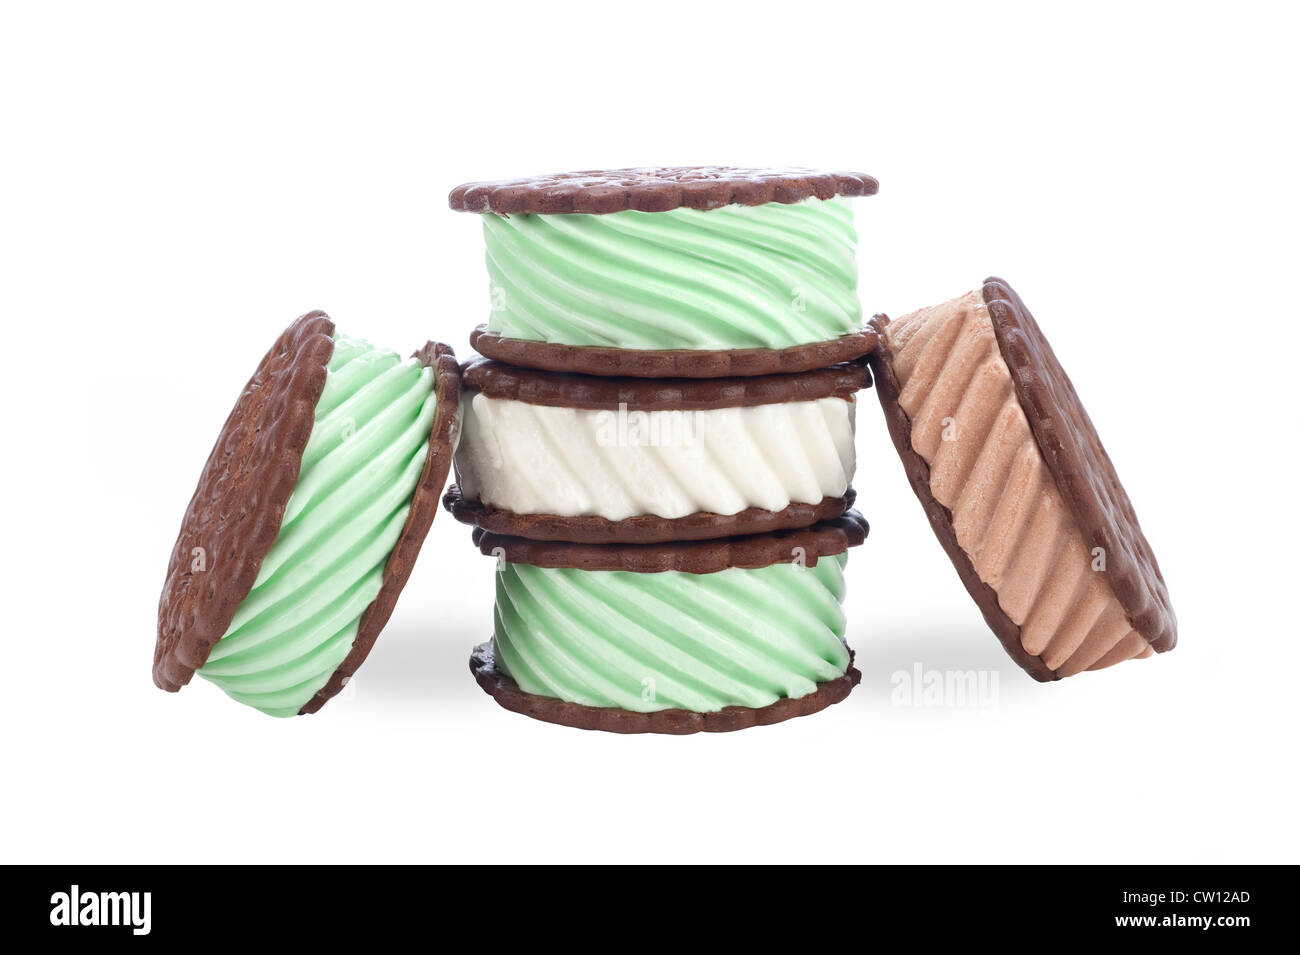 Une collection de chocolat, vanille et glace à la menthe sandwichs sur un fond blanc. Banque D'Images